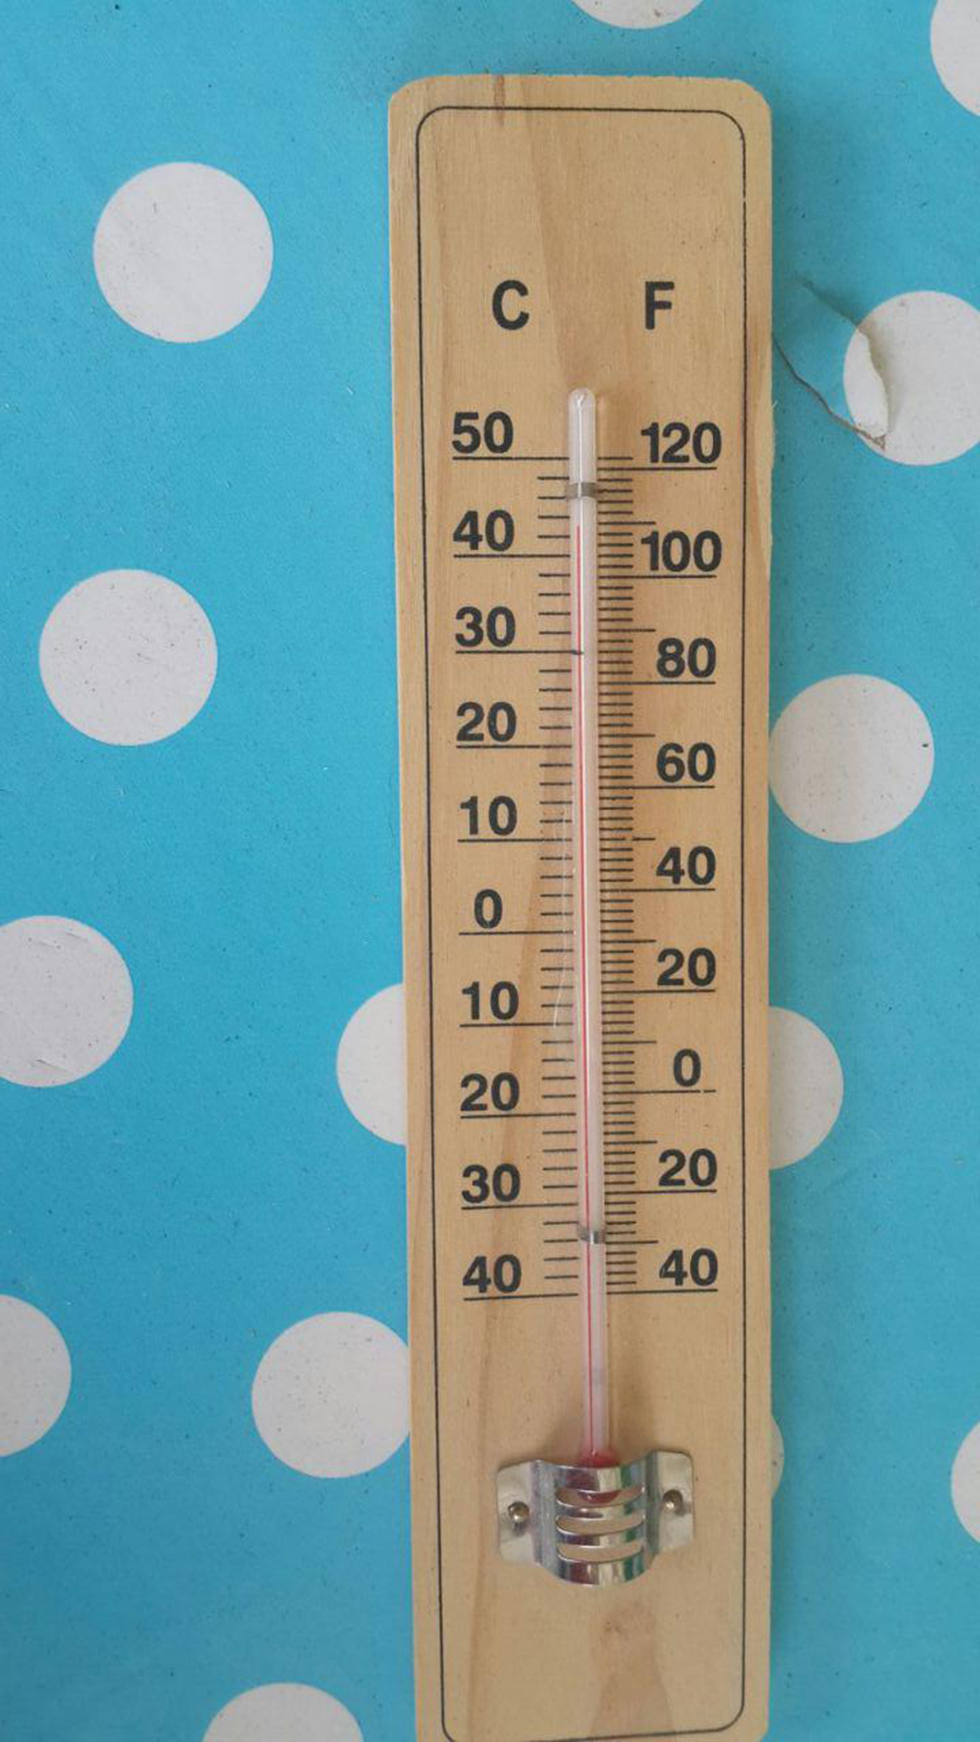 43 מעלות בשער הגולן (צילום: ענת שילה לשם) (צילום: ענת שילה לשם)